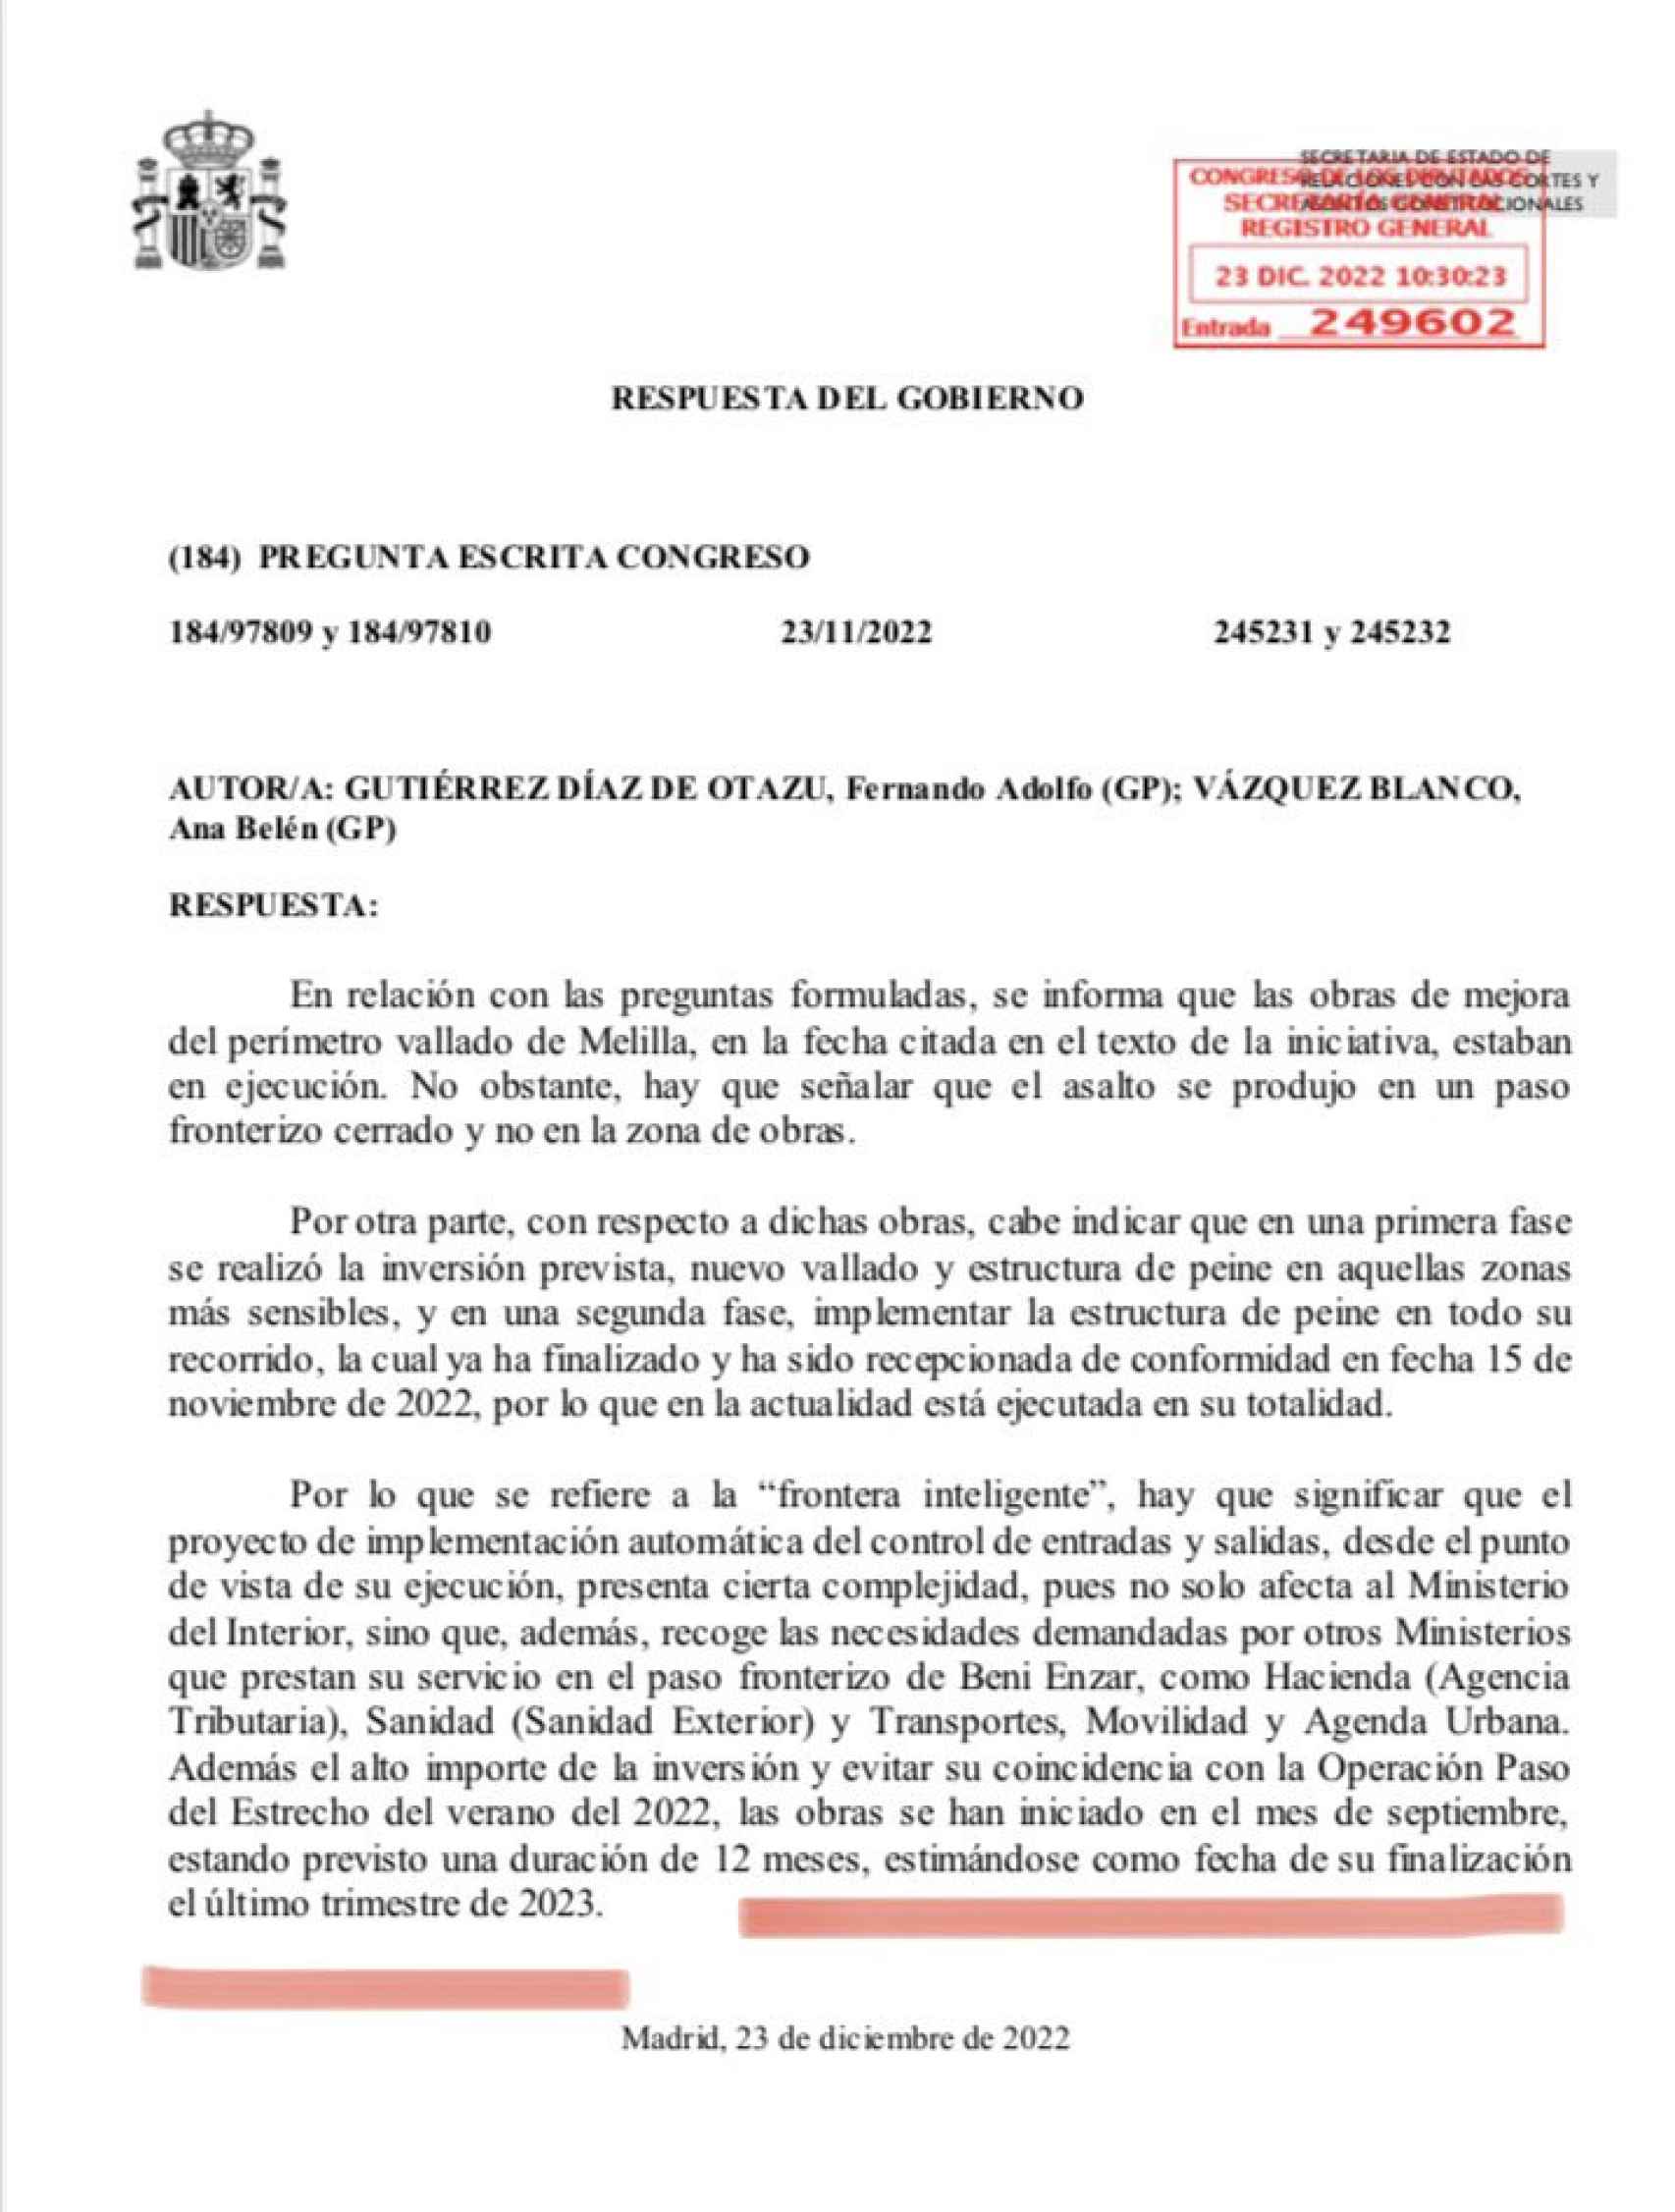 Respuesta parlamentaria del Gobierno sobre la reforma del vallado de Melilla.